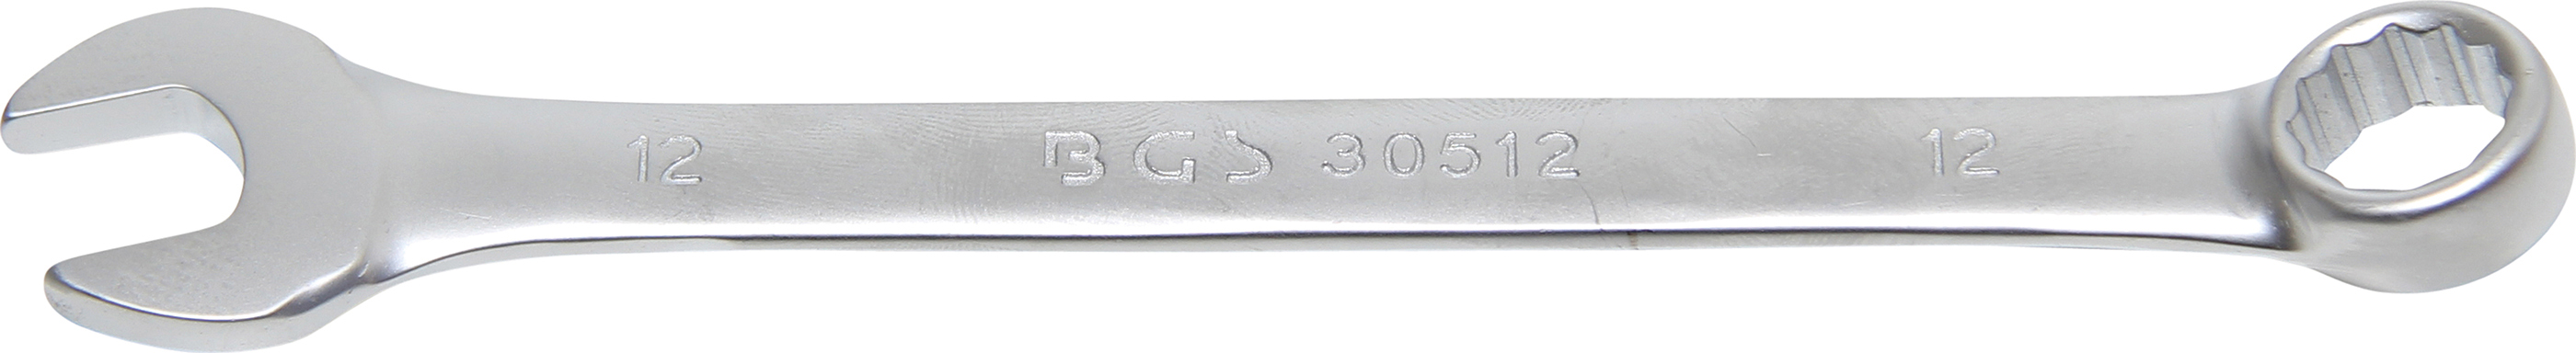 BGS 30512 Cheie combinata, 12 mm